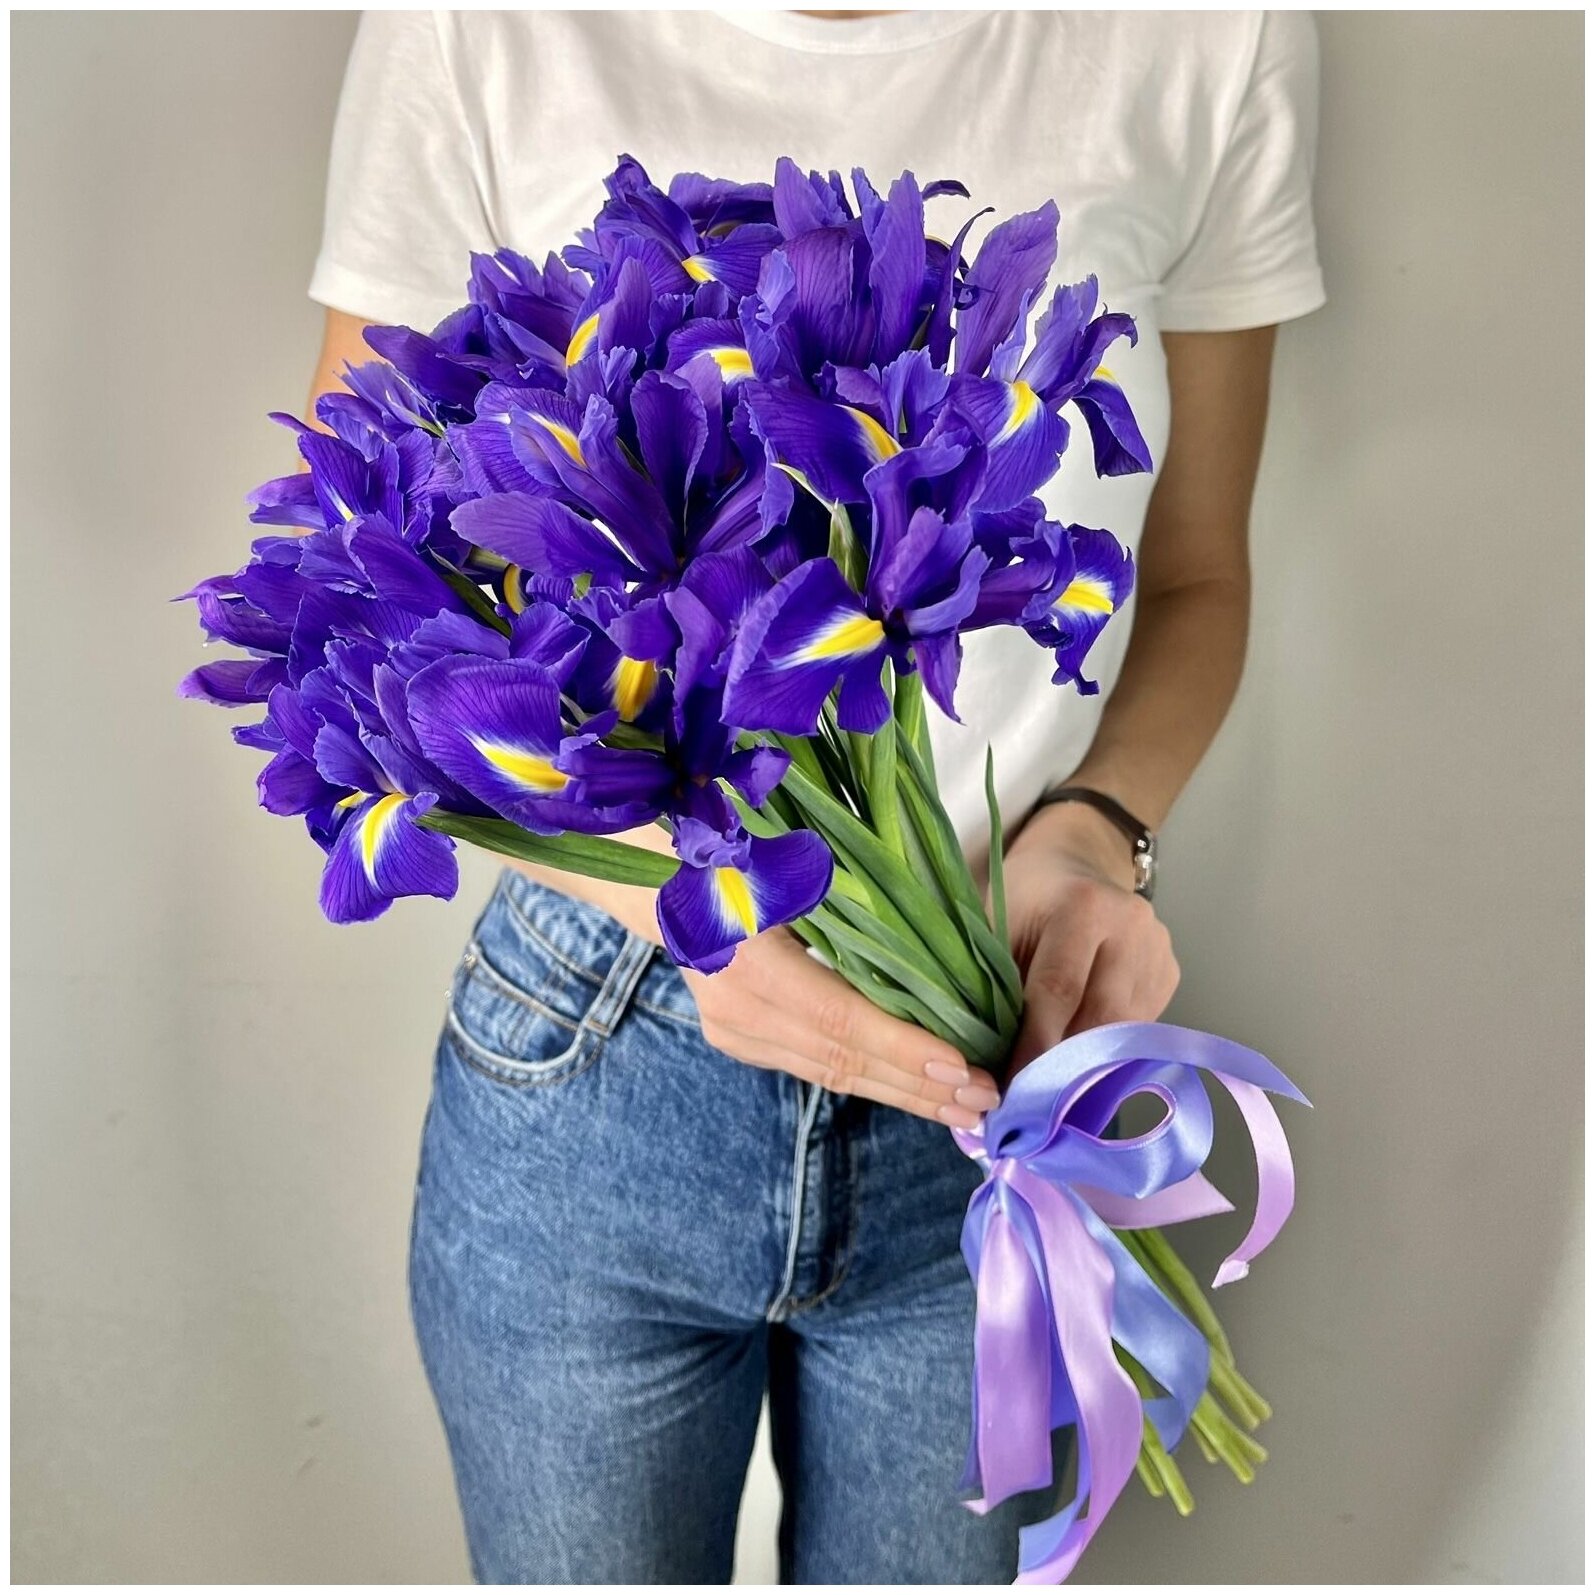 Букет синих ирисов 15 шт из красивых живых цветов, 60 см, цветы живые в букете от Лэтуаль Flowers